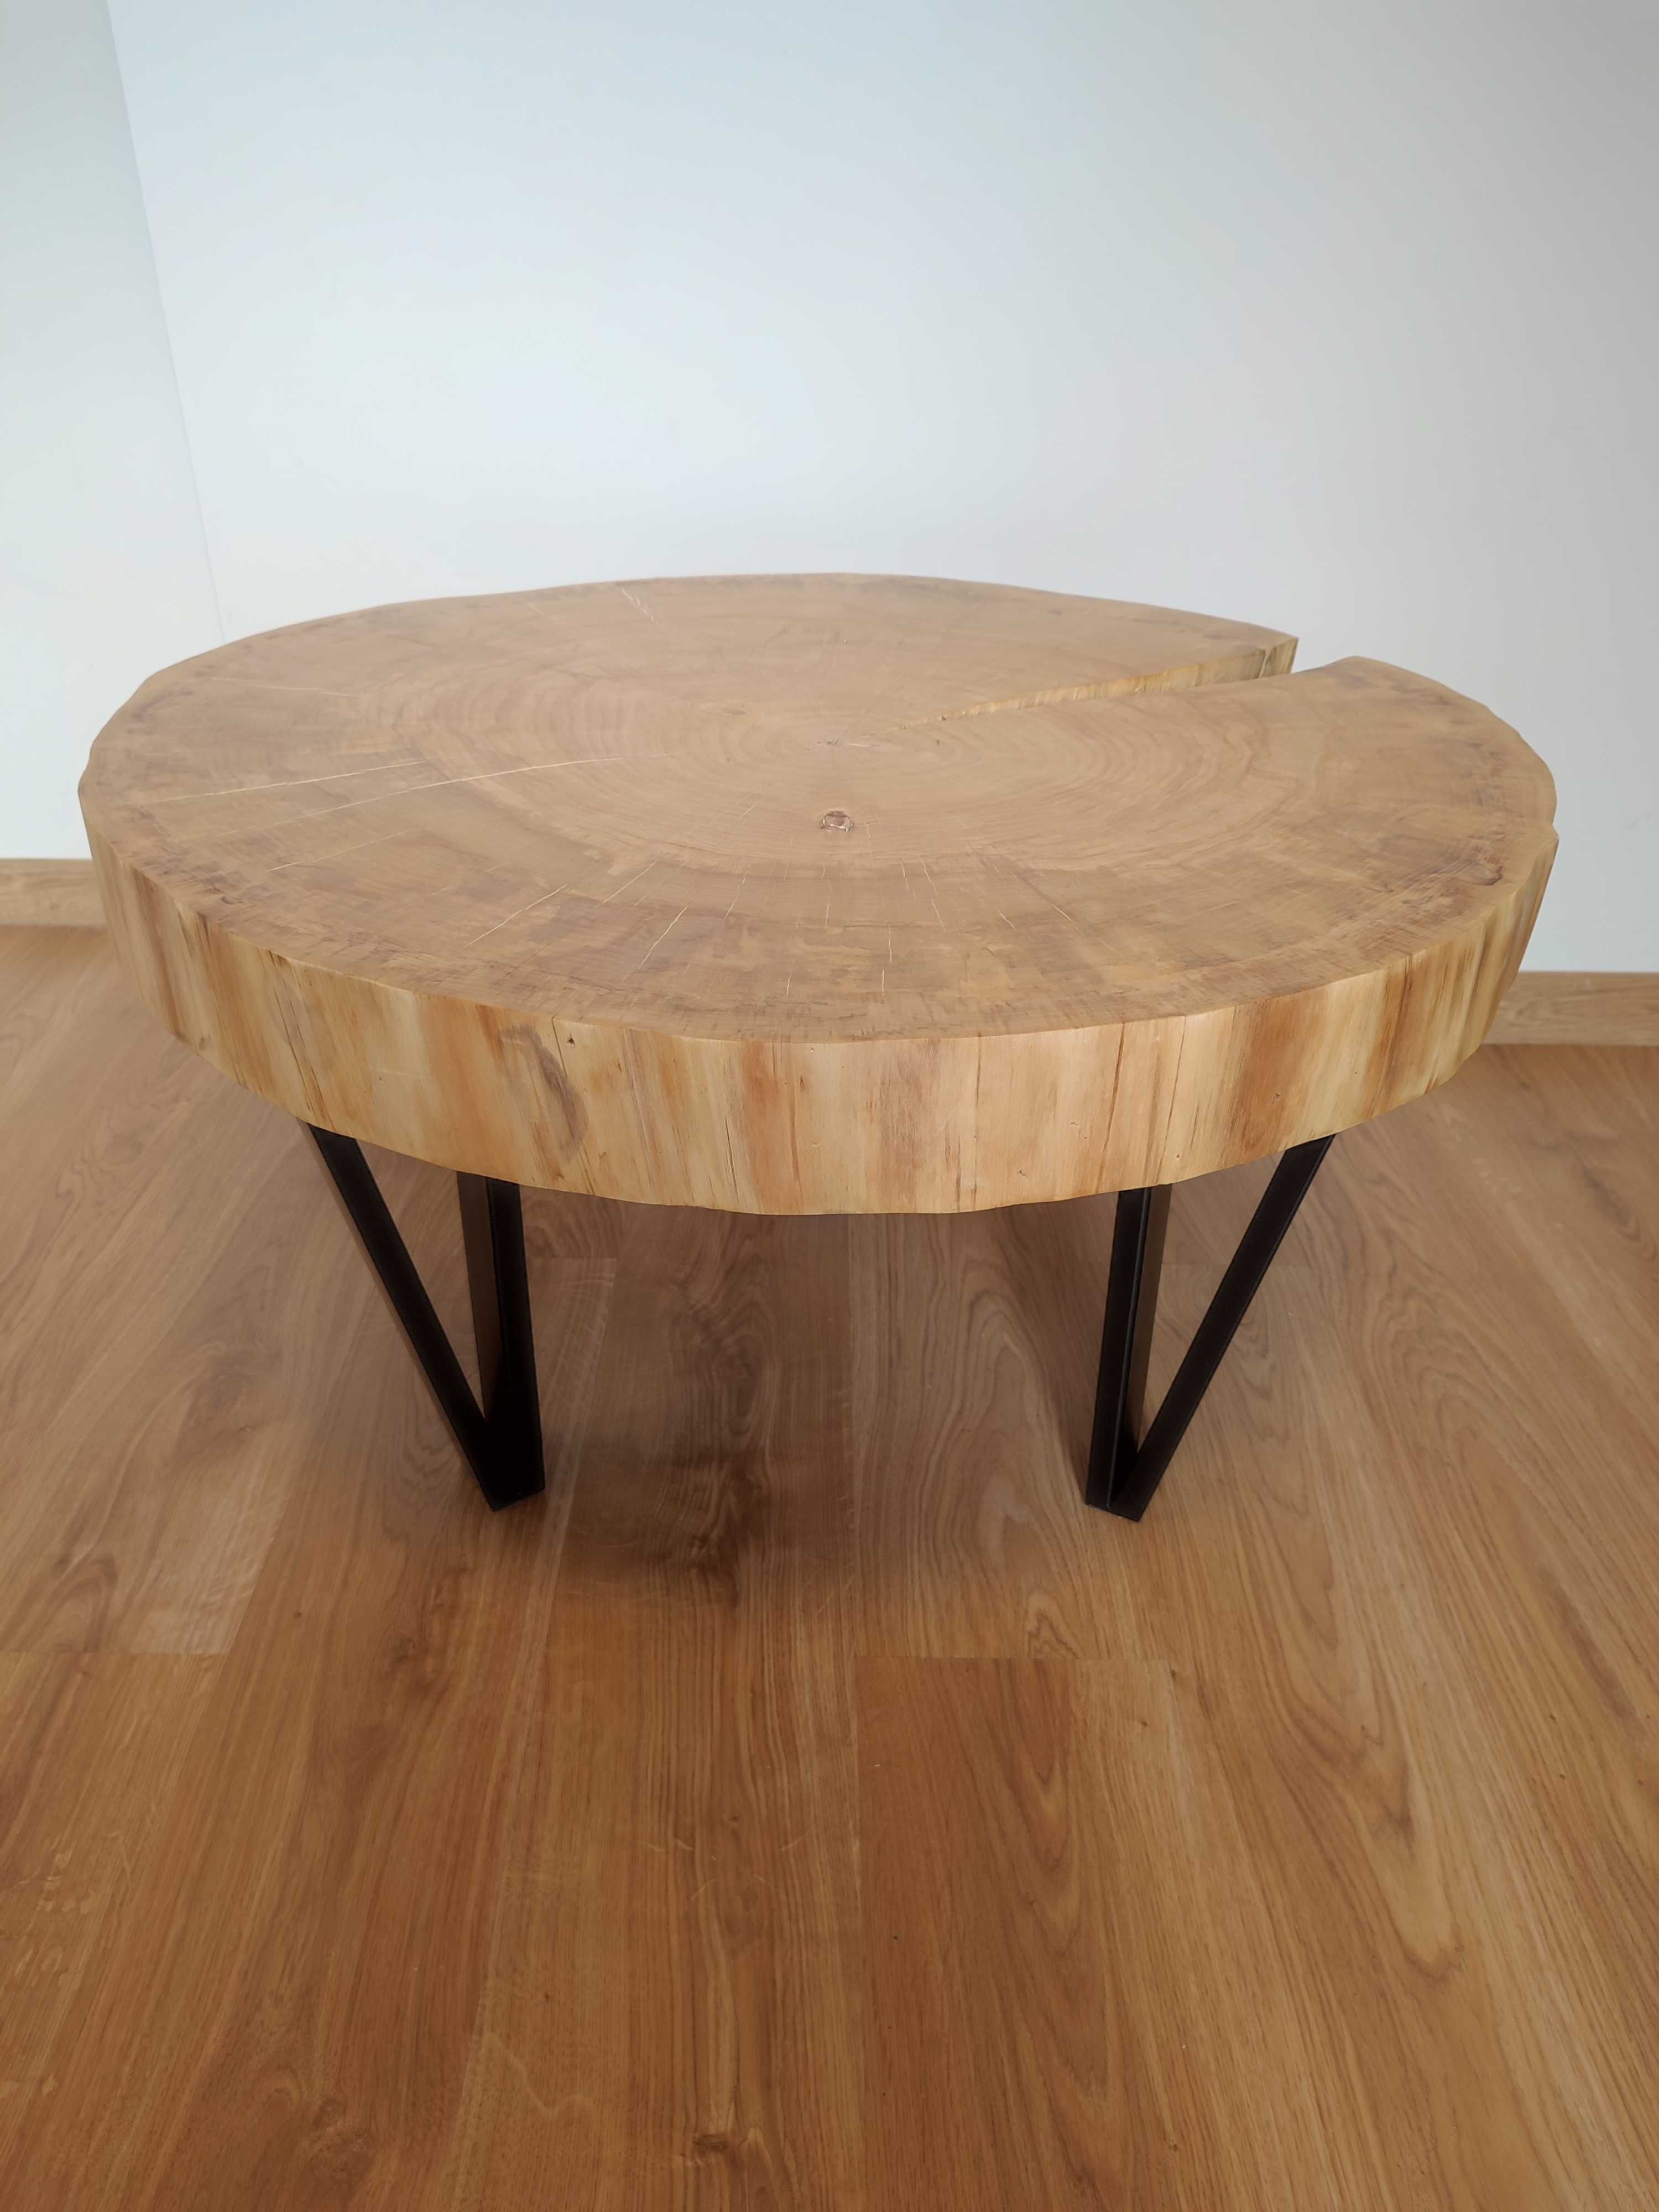 Stół Ława z plastra drewna - naturalny, duży, piękny, loft.